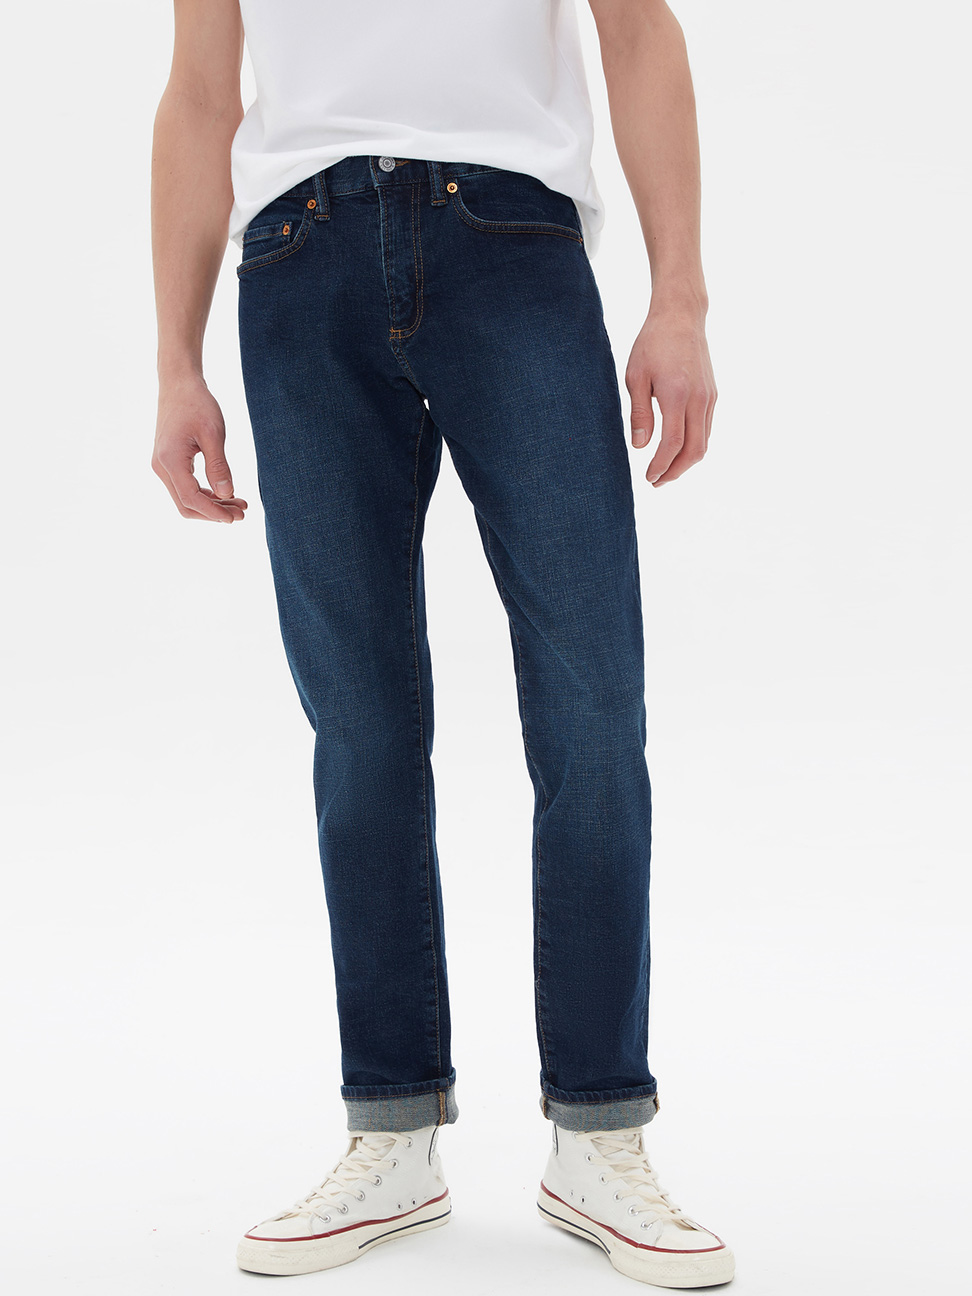 男裝|丹寧深色水洗修身直筒牛仔褲 1969復古經典系列-深藍色